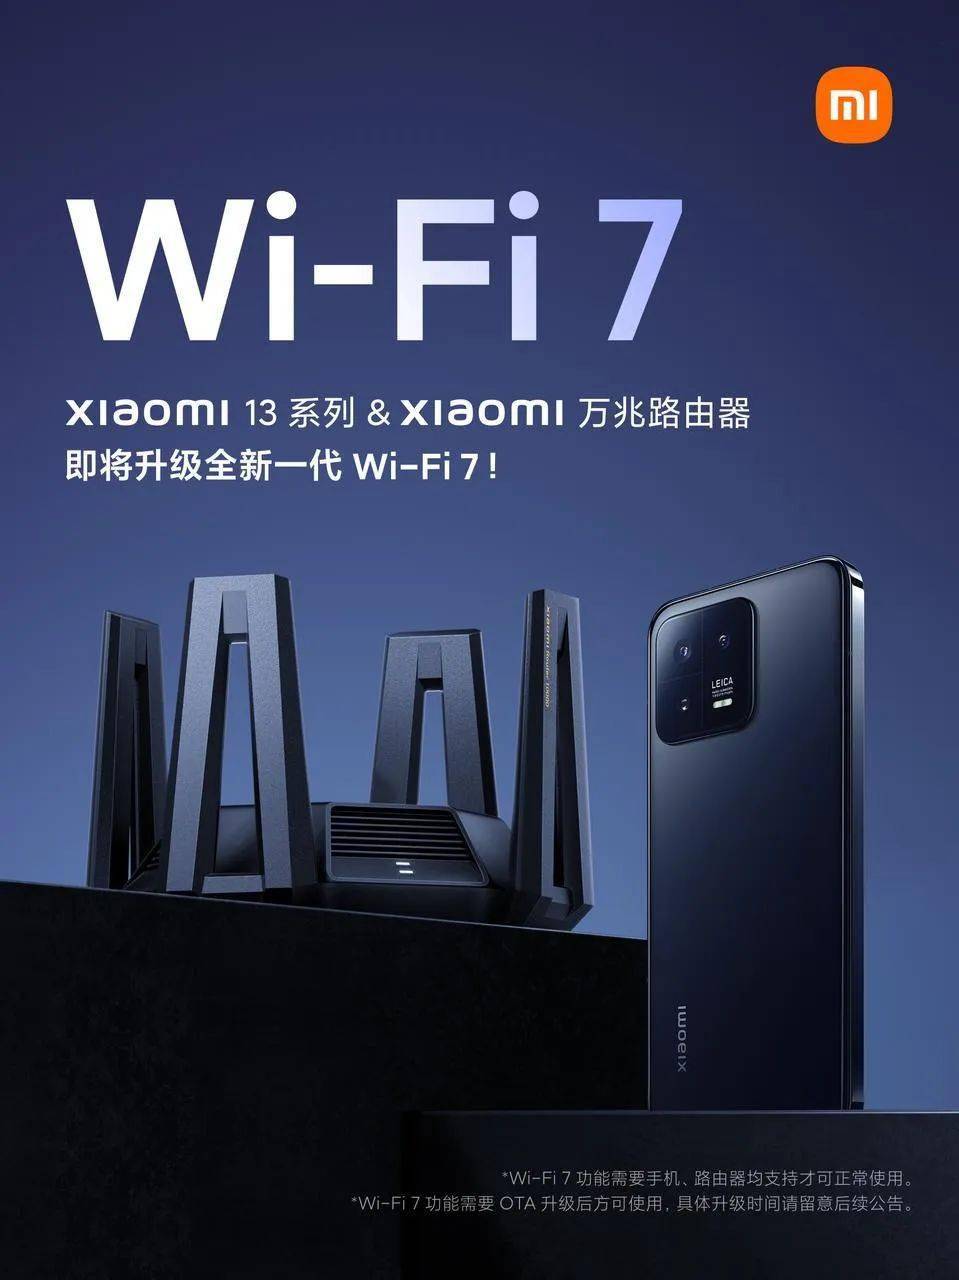 下载苹果手机版小米路由器:雷军： Wi-Fi 7来了！小米13系列和万兆路由器再提速